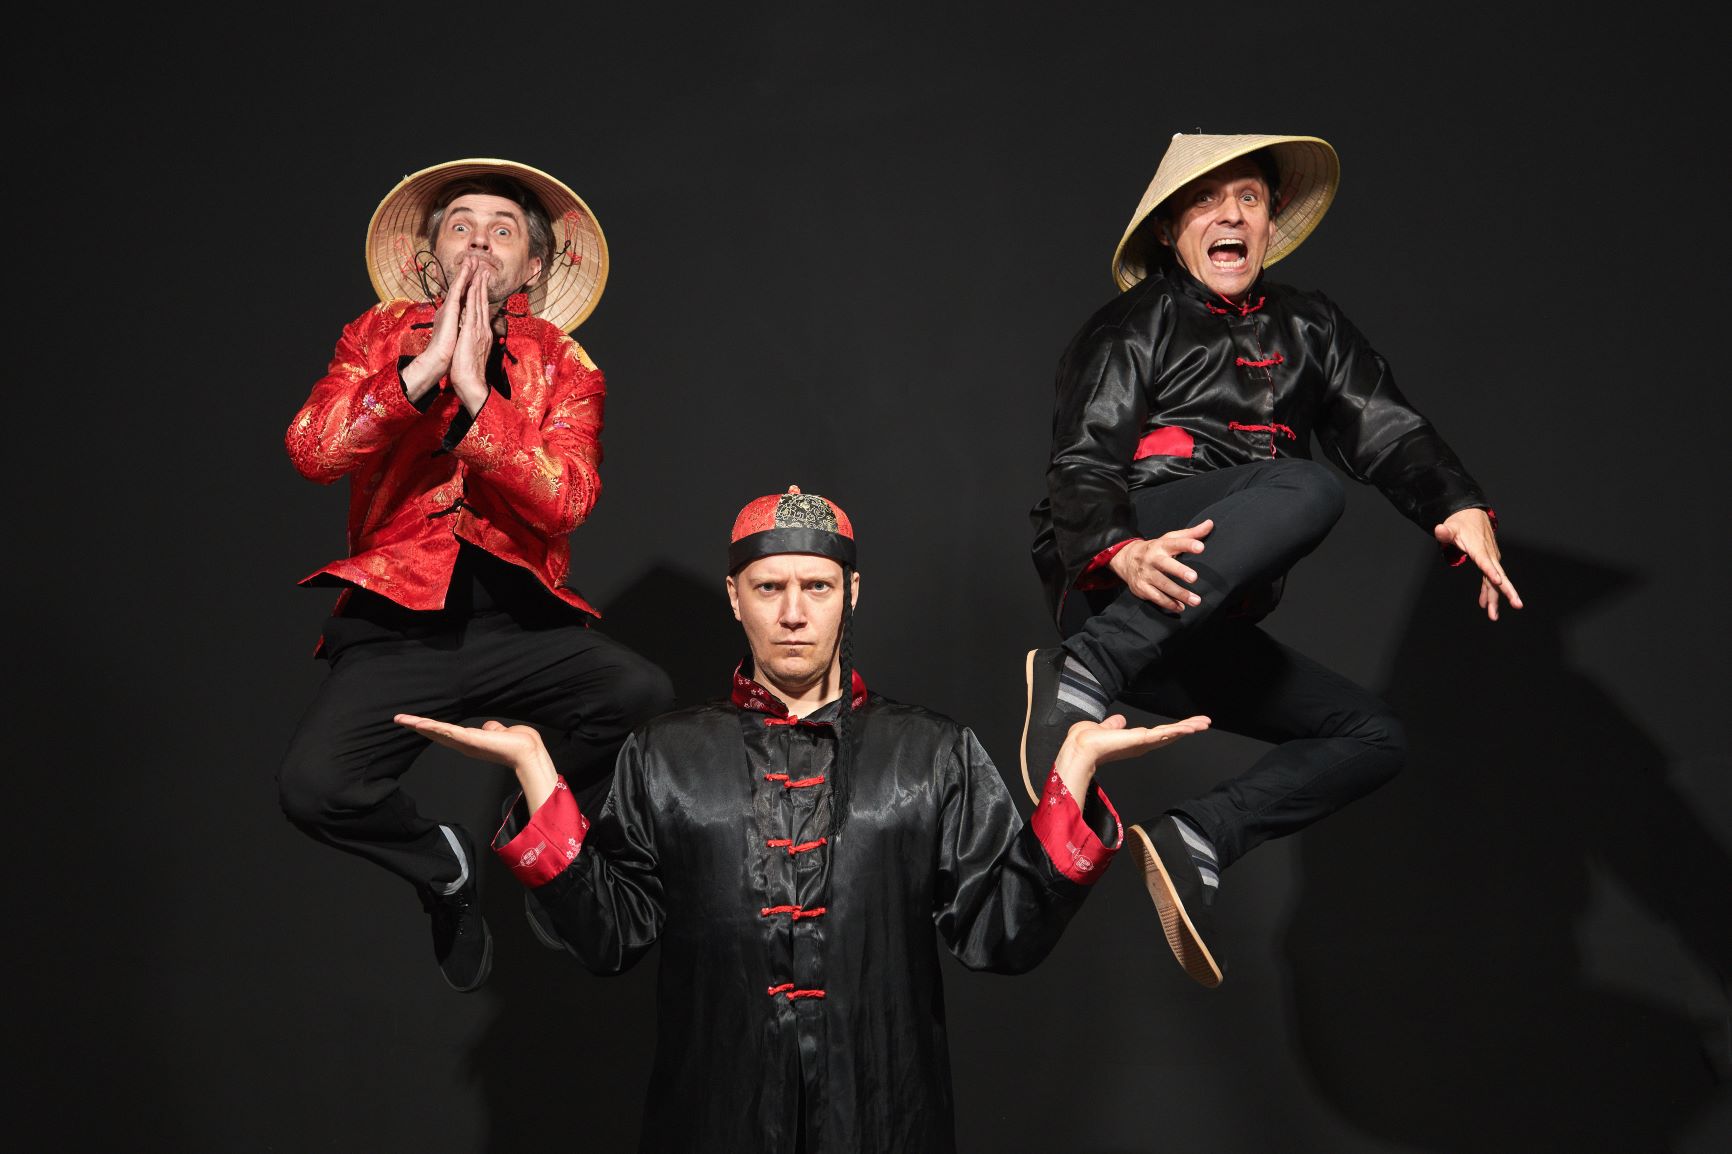 Trzech mężczyzn na scenie w kostiumach przywodzących na myśl stereotypowego Chińczyka.